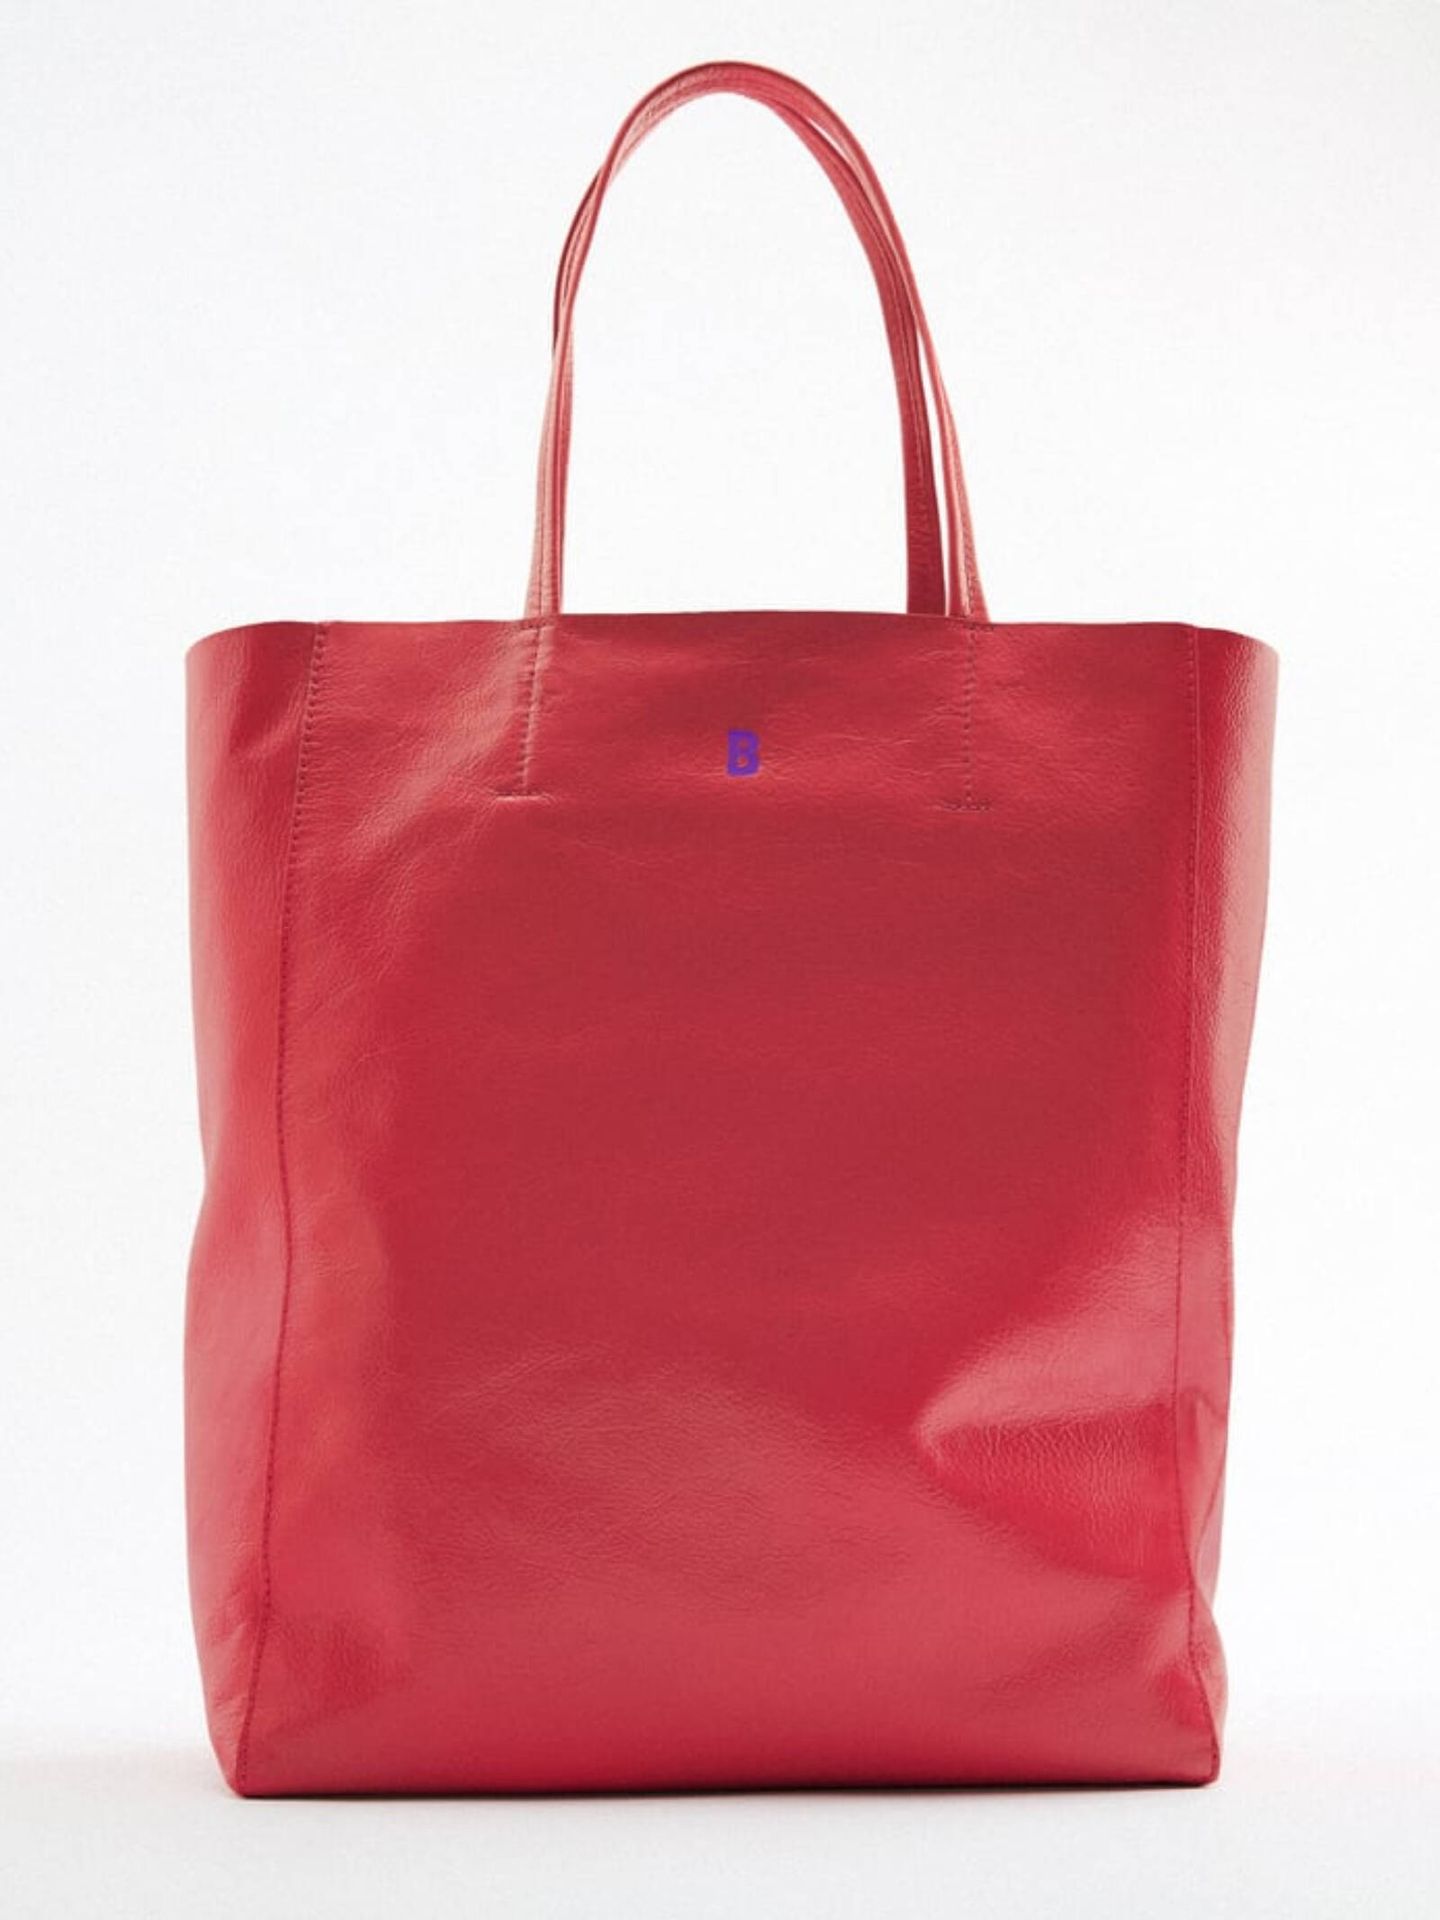 El bolso en color rojo fresa es de lo más alegre. (Cortesía)